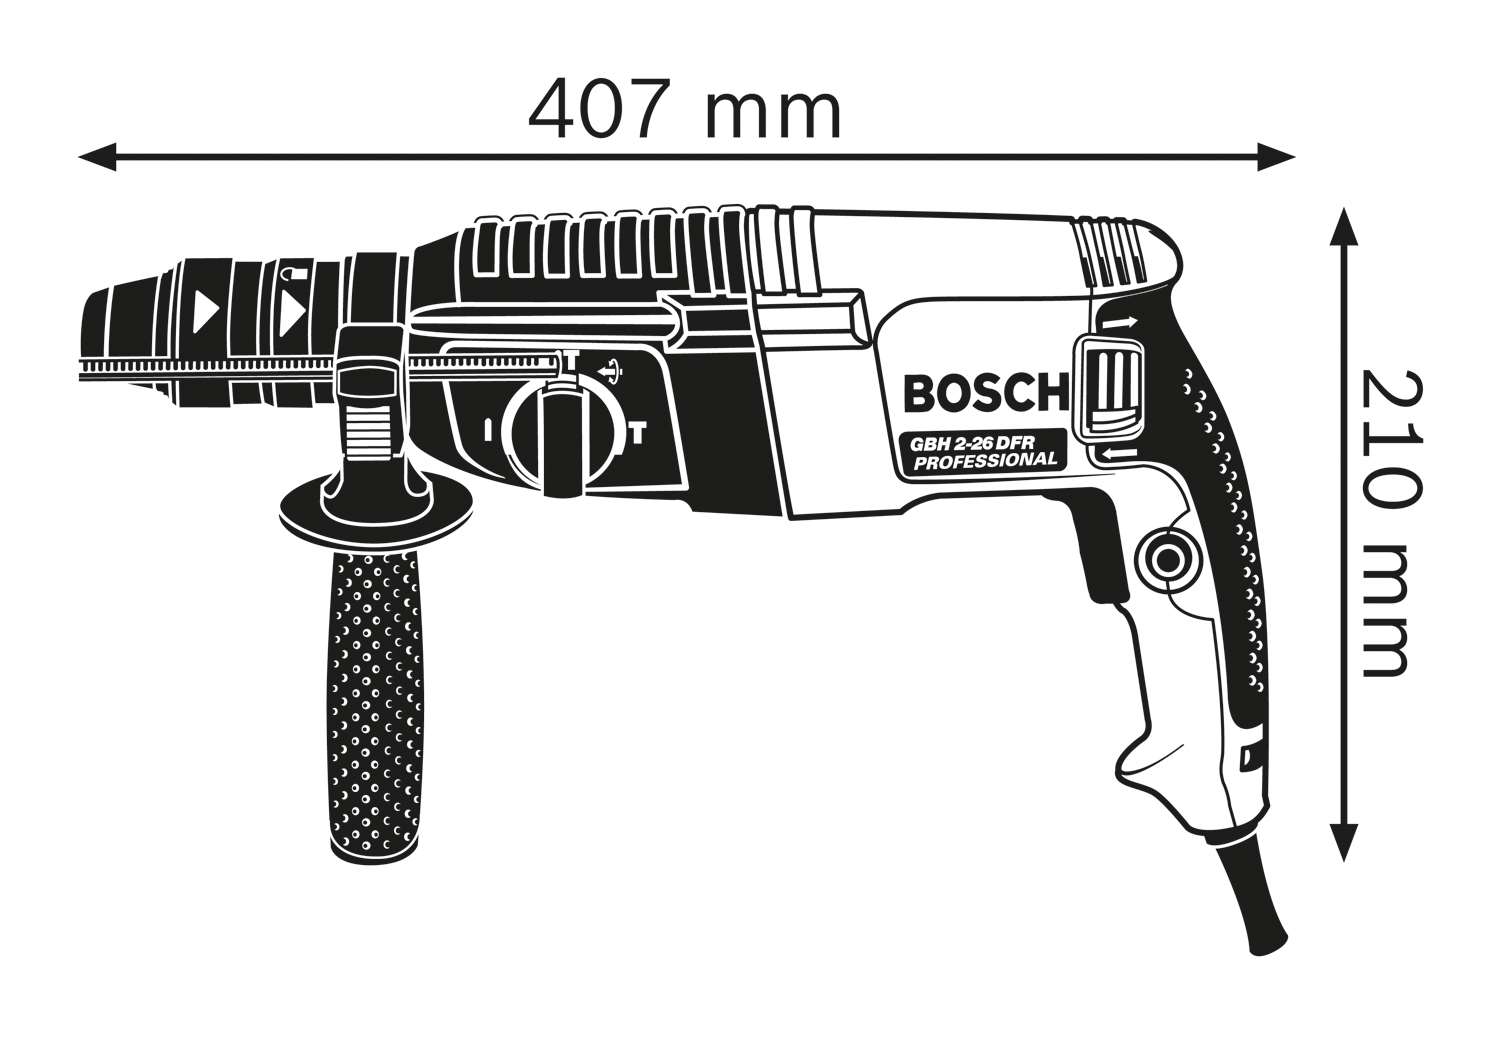 BOSCH GBH 2-26 DFR,  vrtací kladivo s SDS plus,  800 W,  příklep 3 J,  4 – 26 mm2 